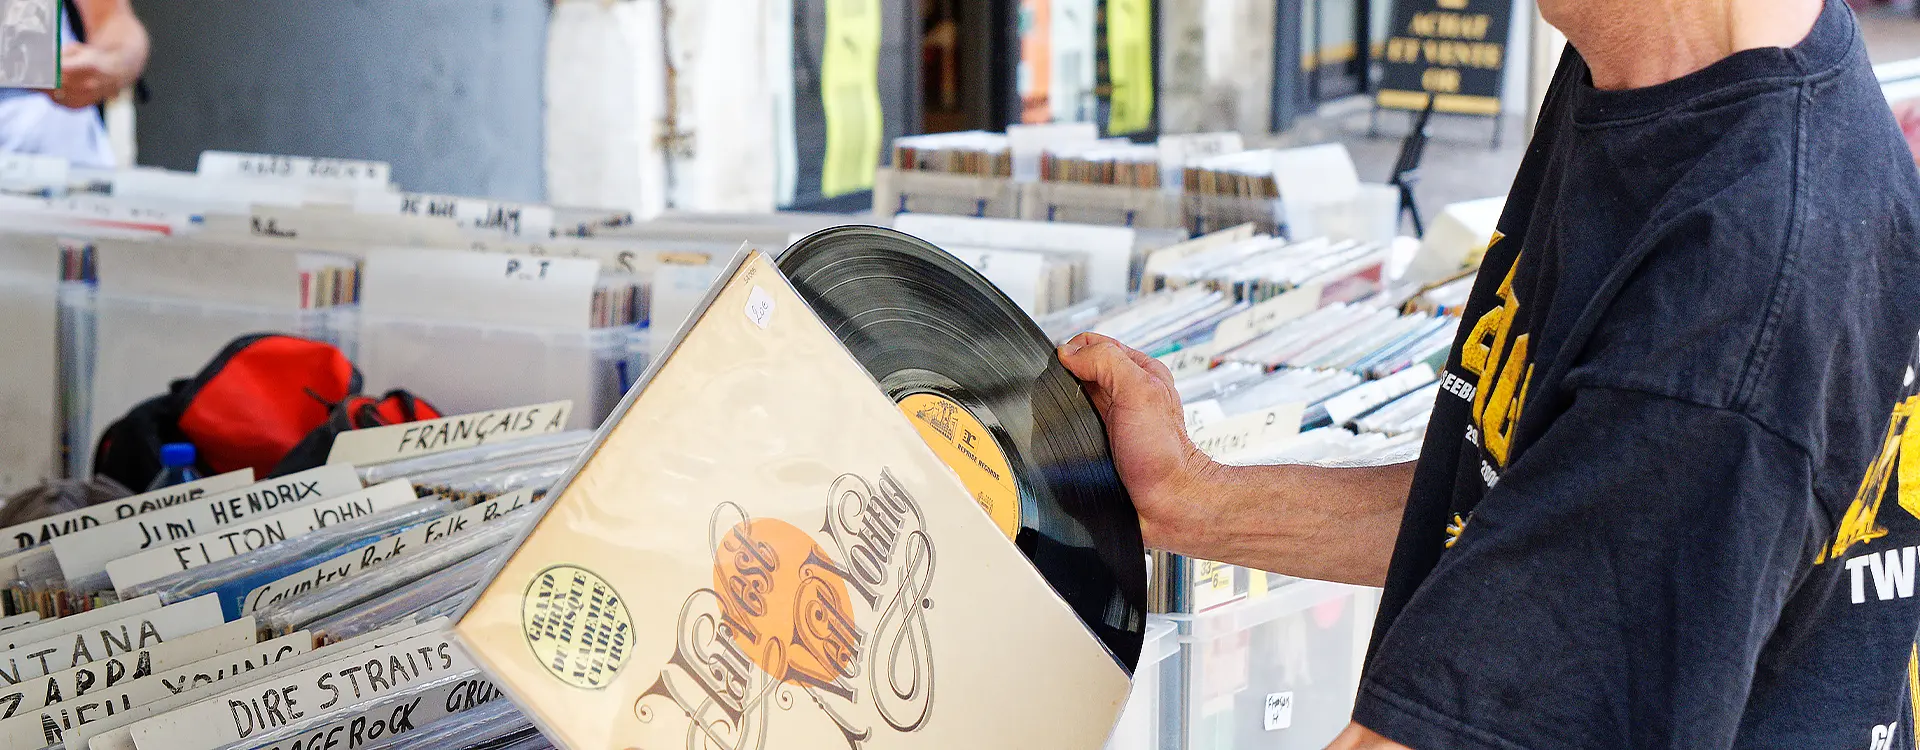 Vente de disques vinyle à Chambéry et en Rhône-Alpes